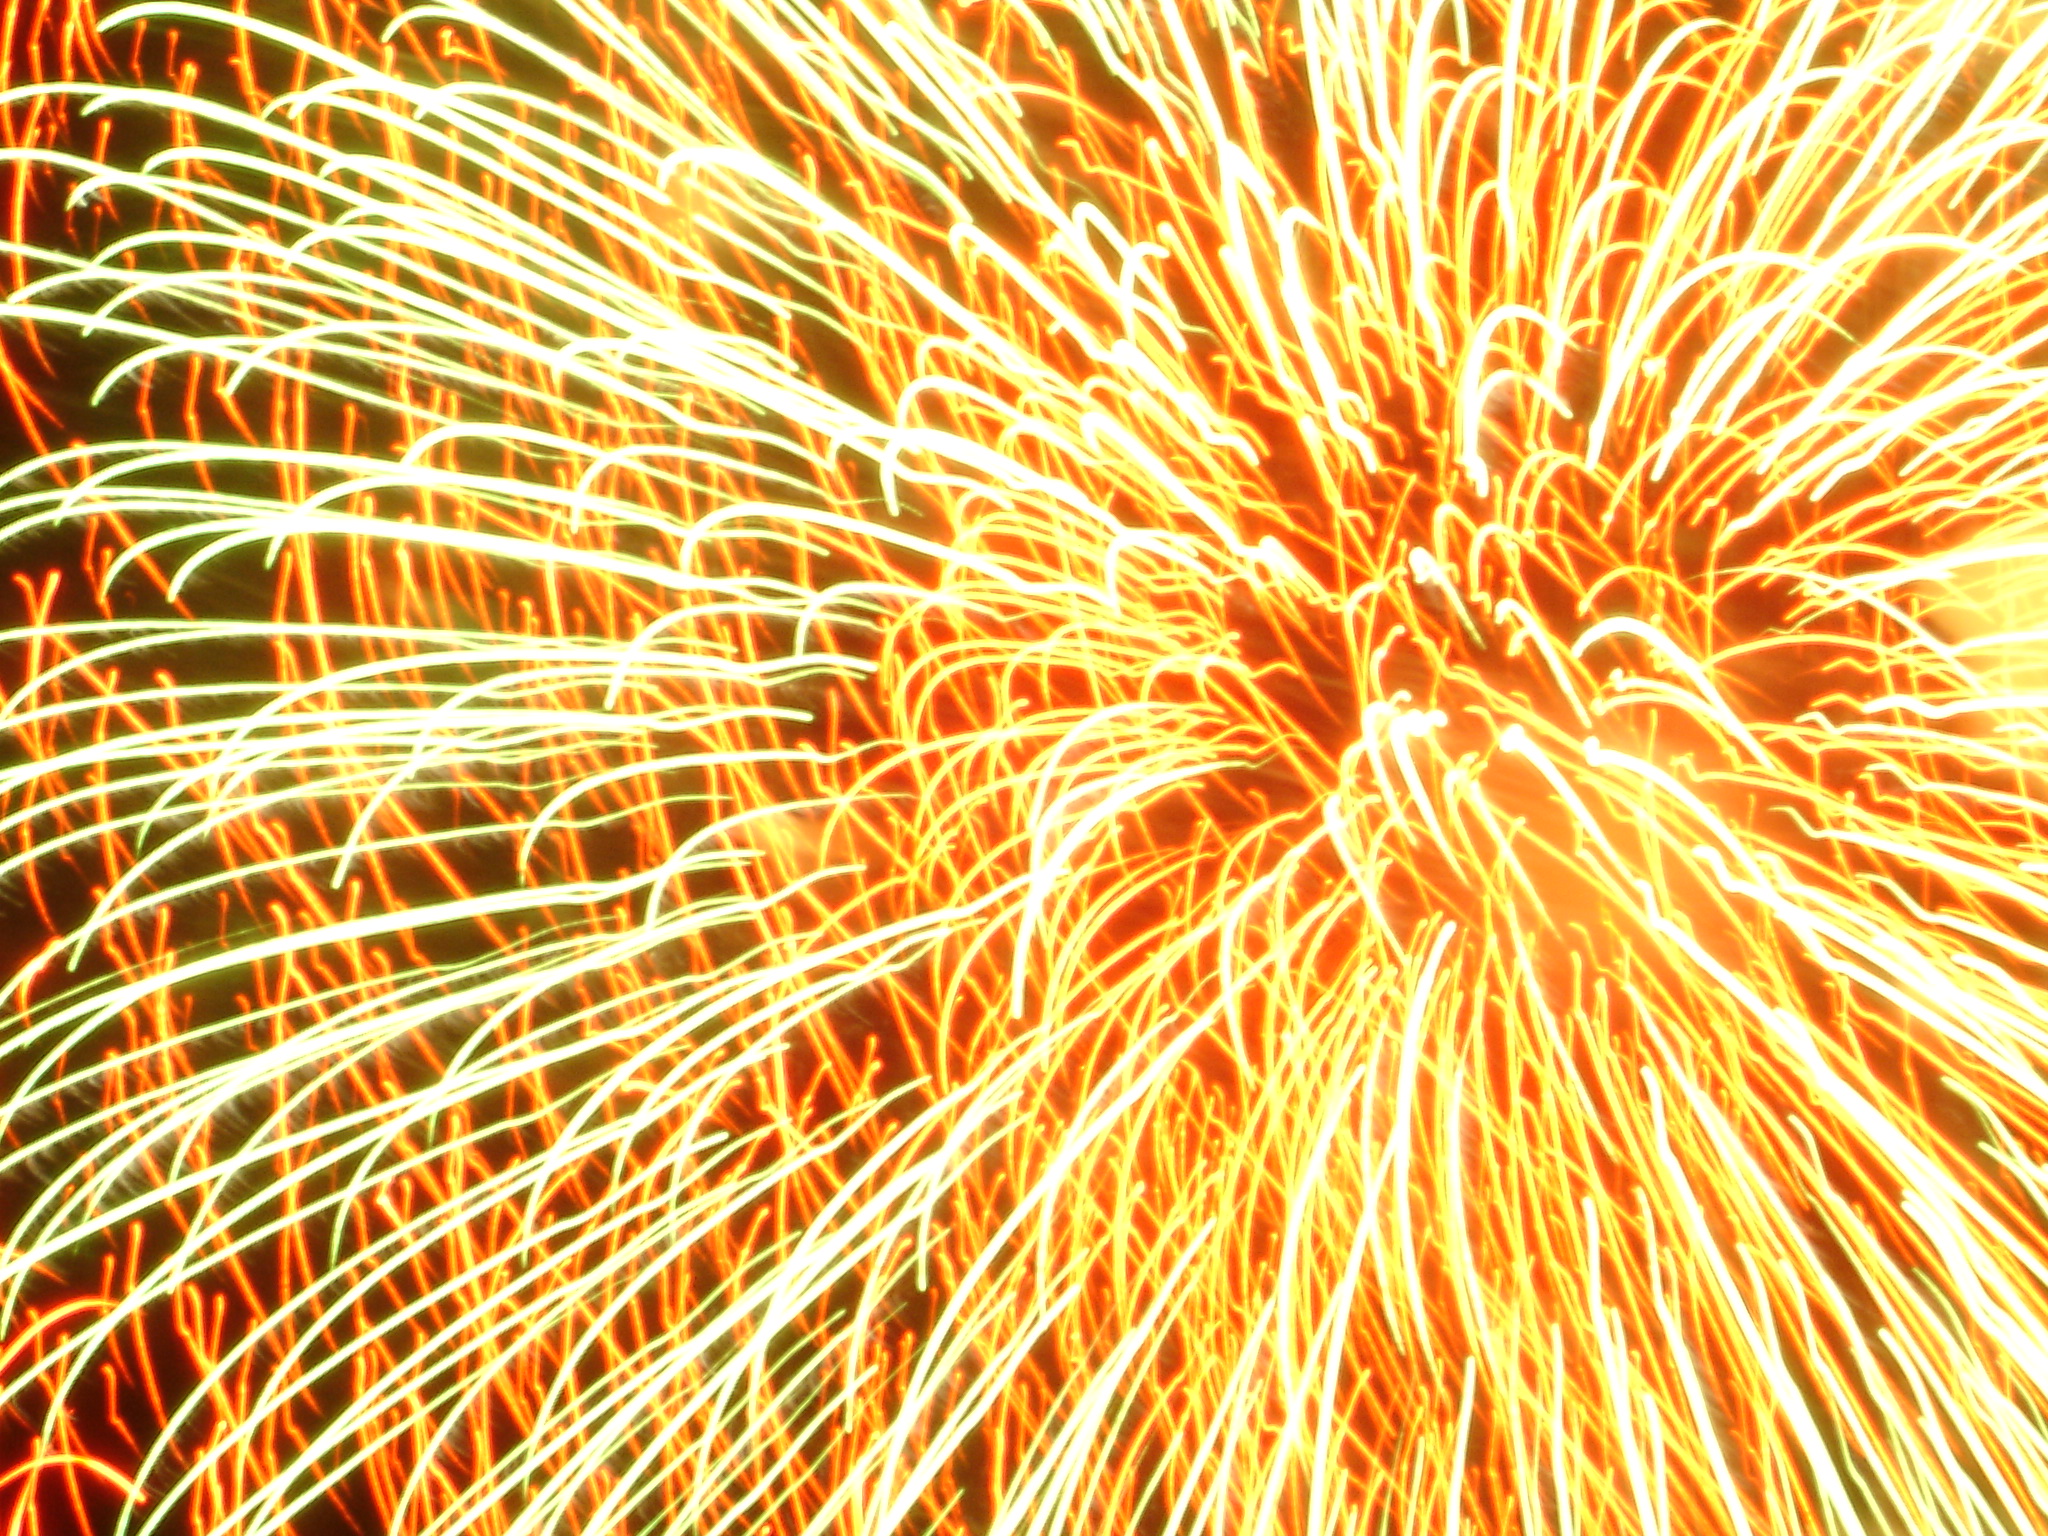 fireworks shows around Austin 2011